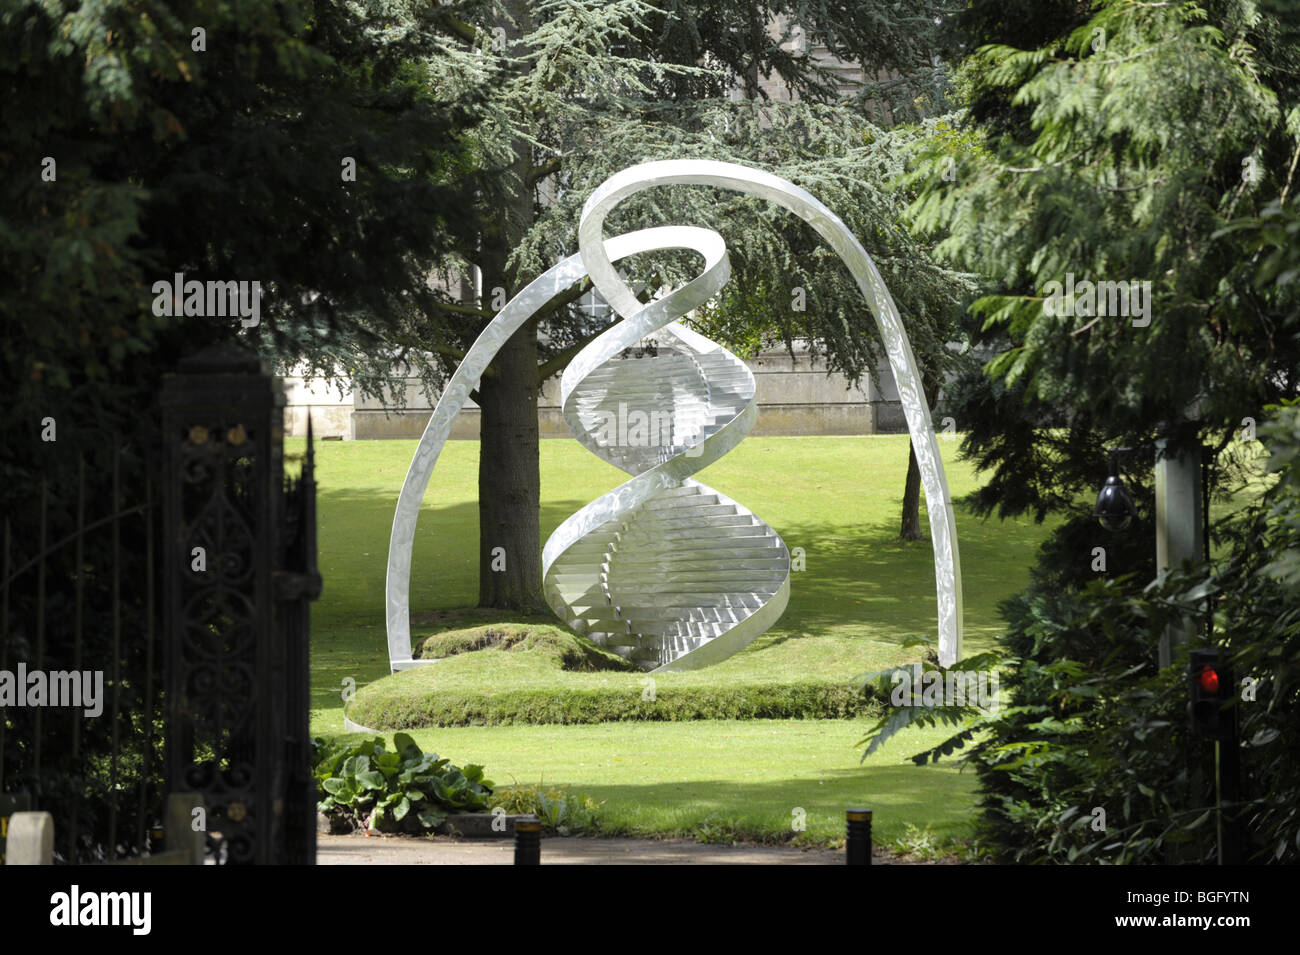 Sculpture par Charles Jencks de double hélice d'ADN à Clare College, Cambridge University Banque D'Images